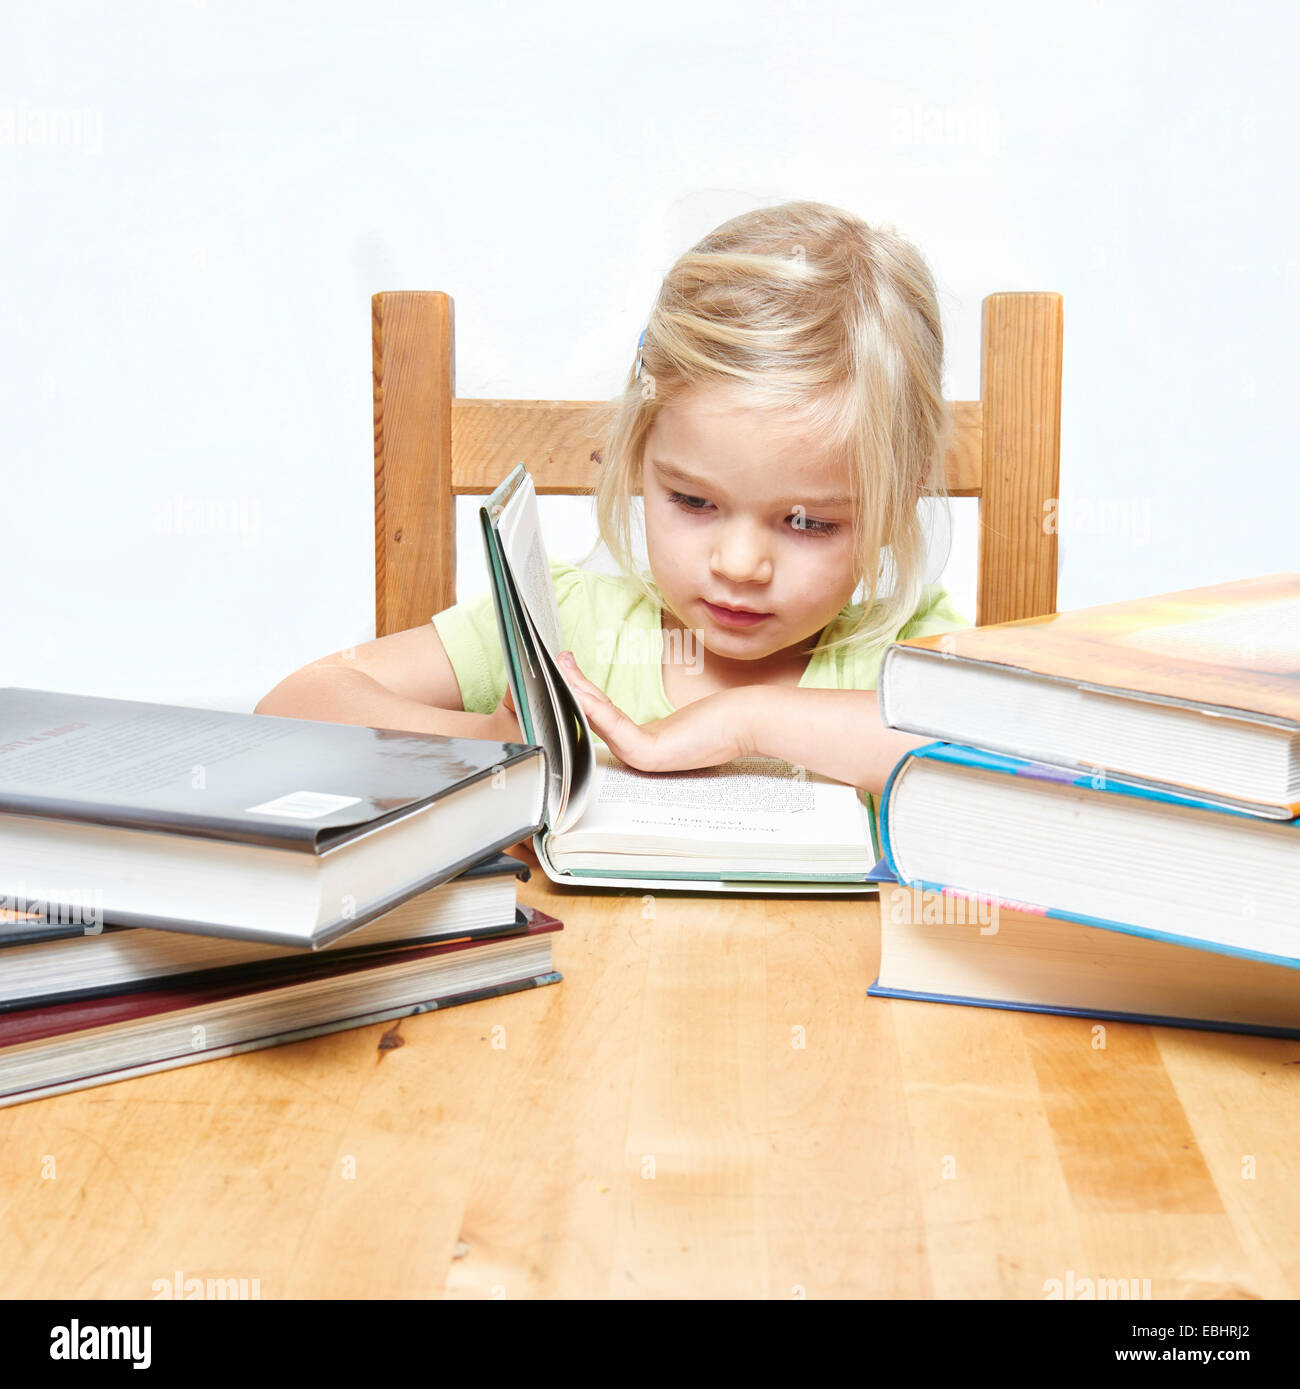 Süße junge Kind kleine blonde Mädchen lesen und studieren ihr Buch, weißer Hintergrund, Stapel von Büchern Stockfoto